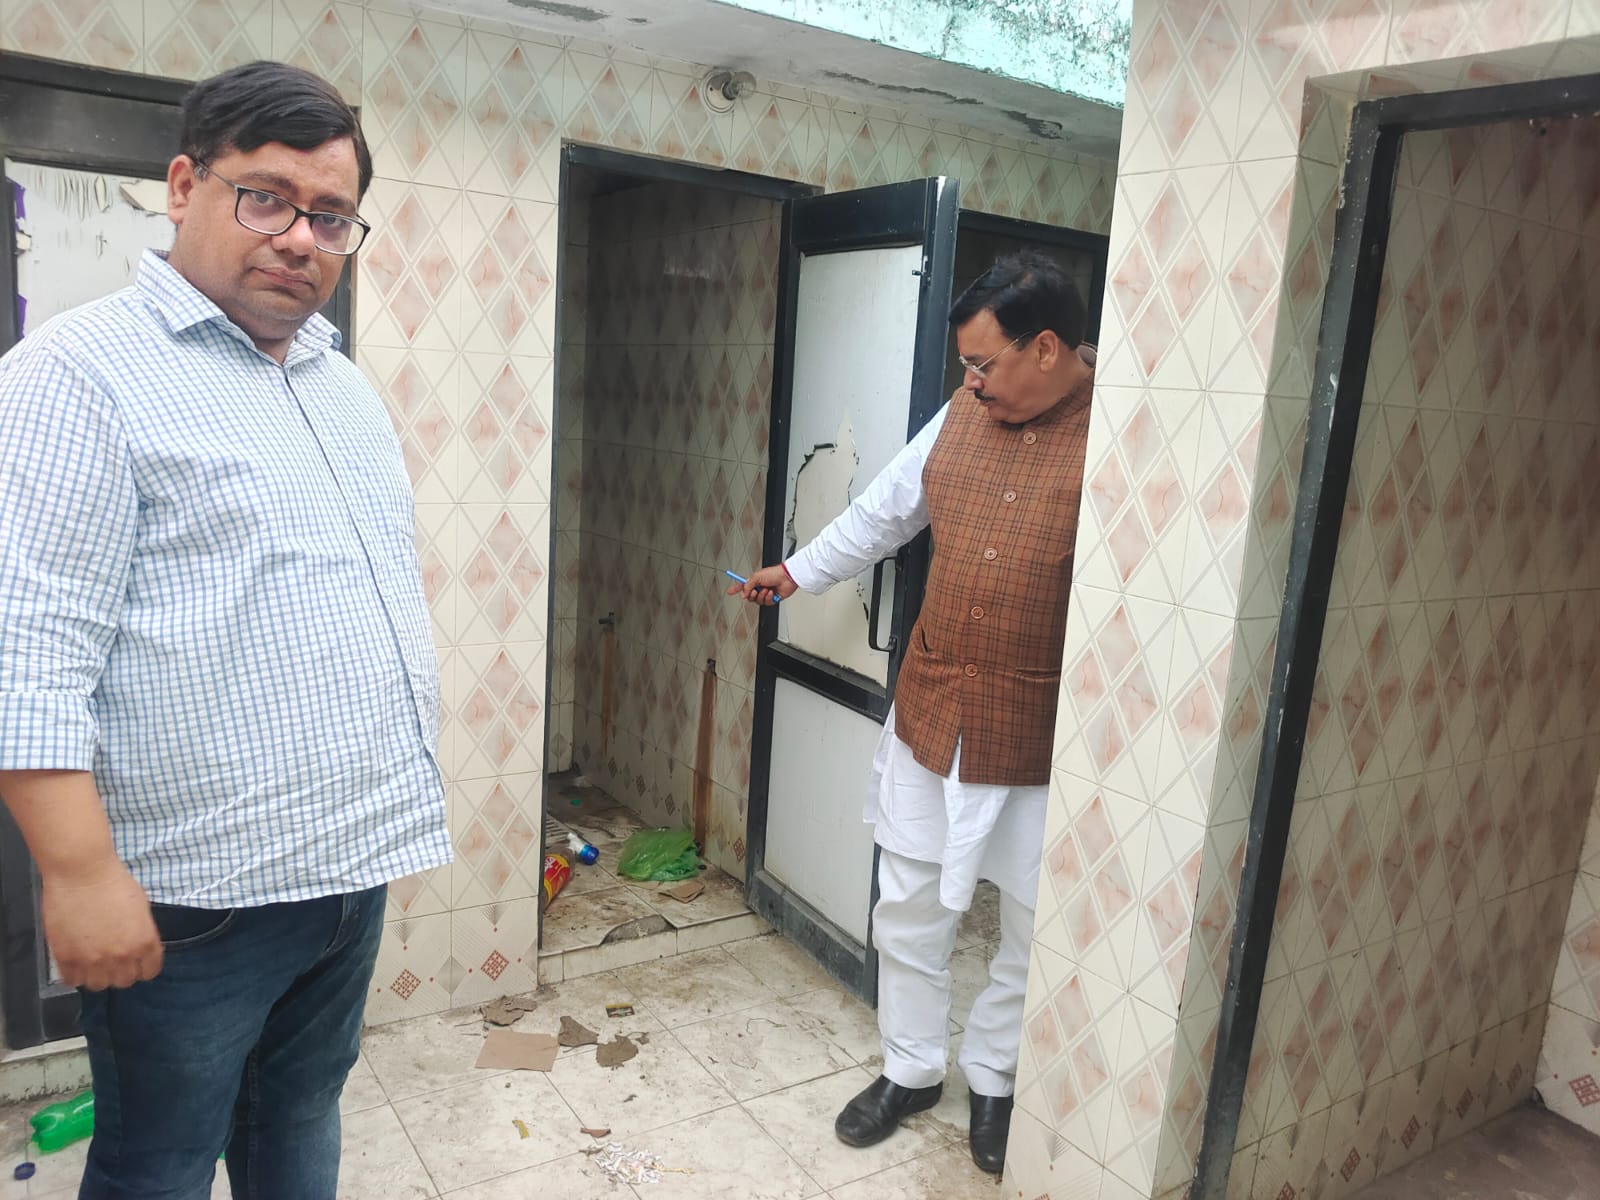 सुलभ शौचालय में गन्दगी देख कर विधायक राजेश शुक्ला ने नगर पालिका अधिकारियों को लगाईं फटकार 